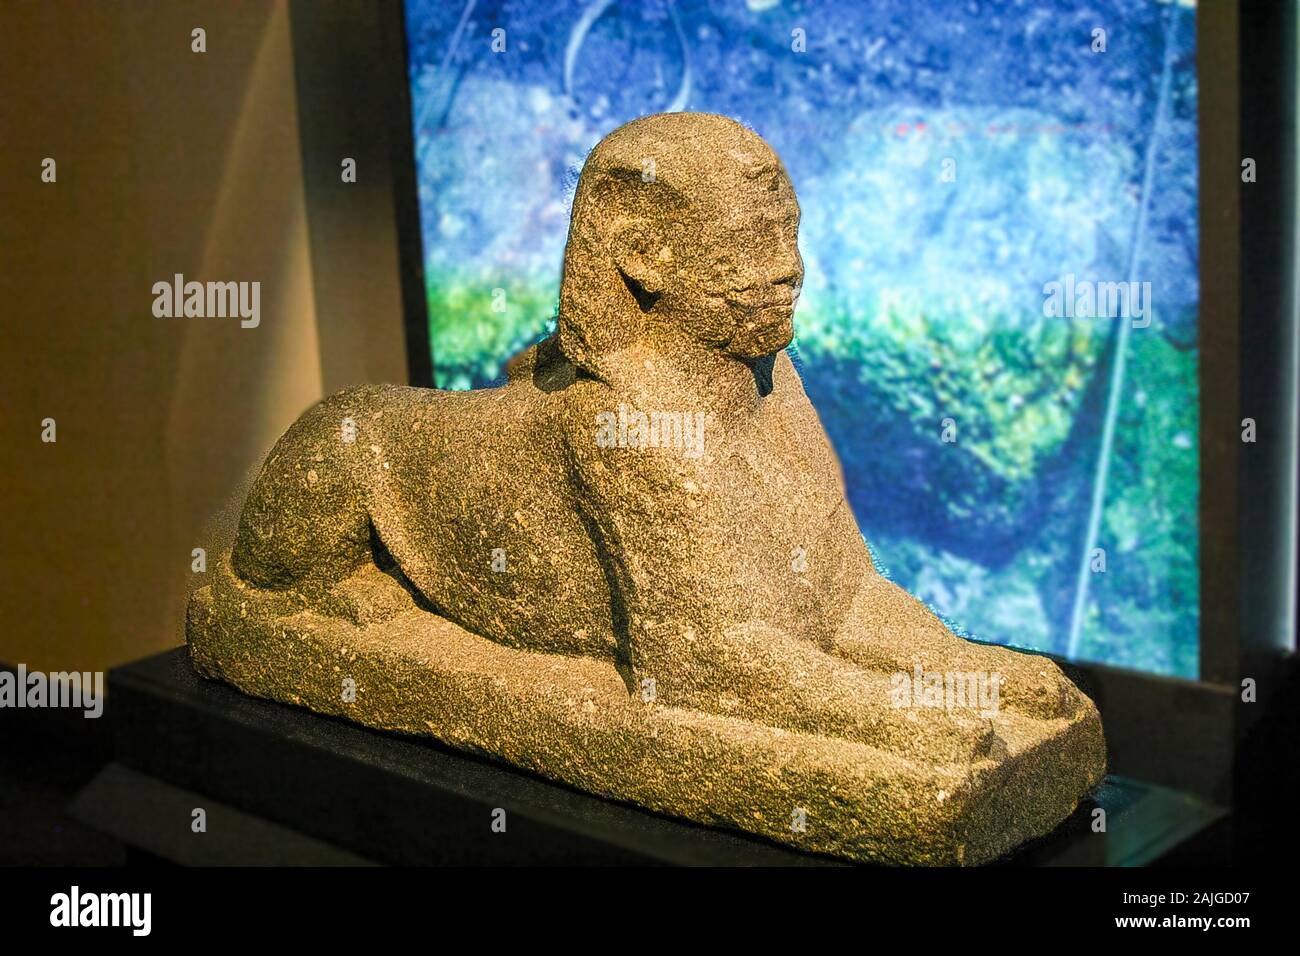 Egypte, Alexandrie, Musée National, un sphinx. Trouvés lors de fouilles sous-marines de Franck Goddio et affiché dans ses expositions. Banque D'Images